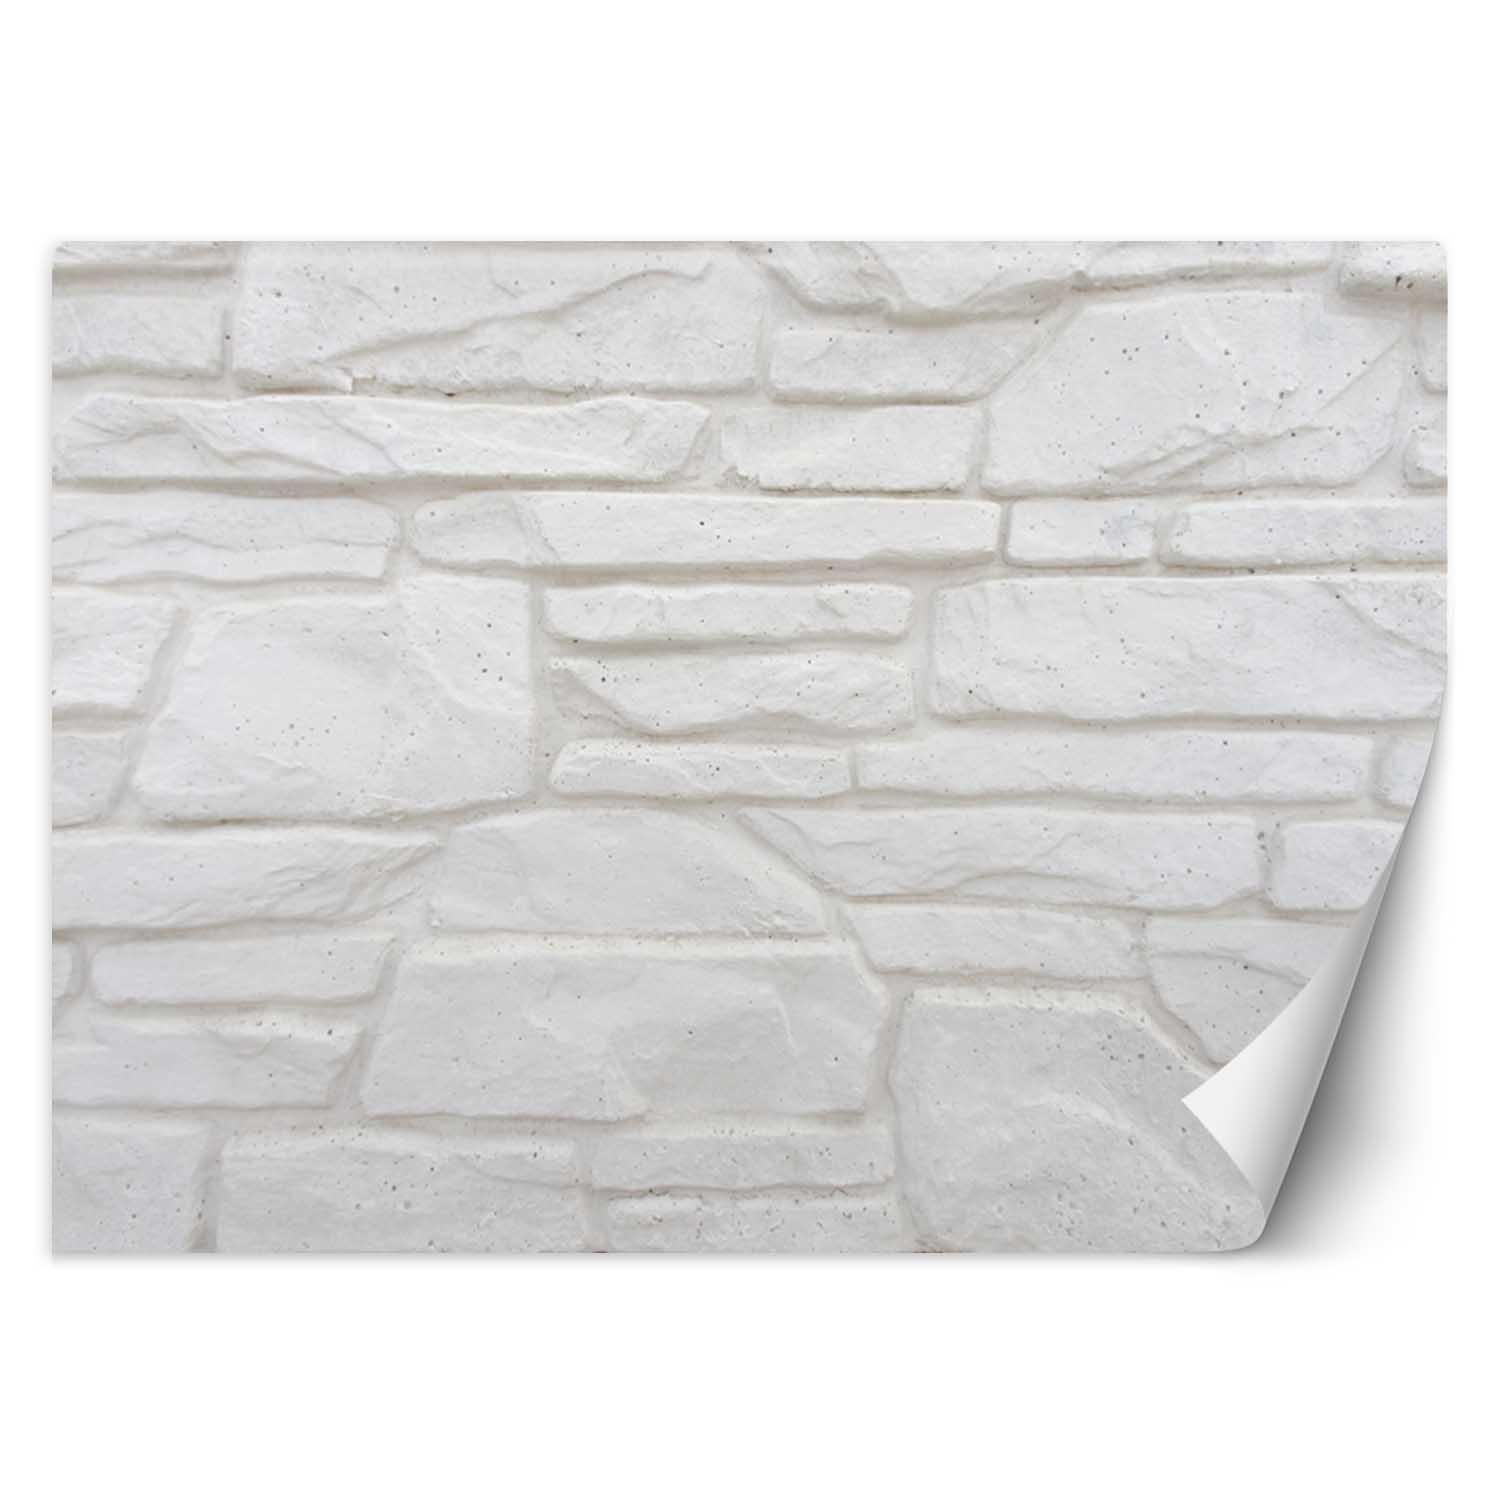 Trend24 – Behang – Witte Stenen Muur – Behangpapier – Behang Woonkamer – Fotobehang – 450x315x2 cm – Incl. behanglijm